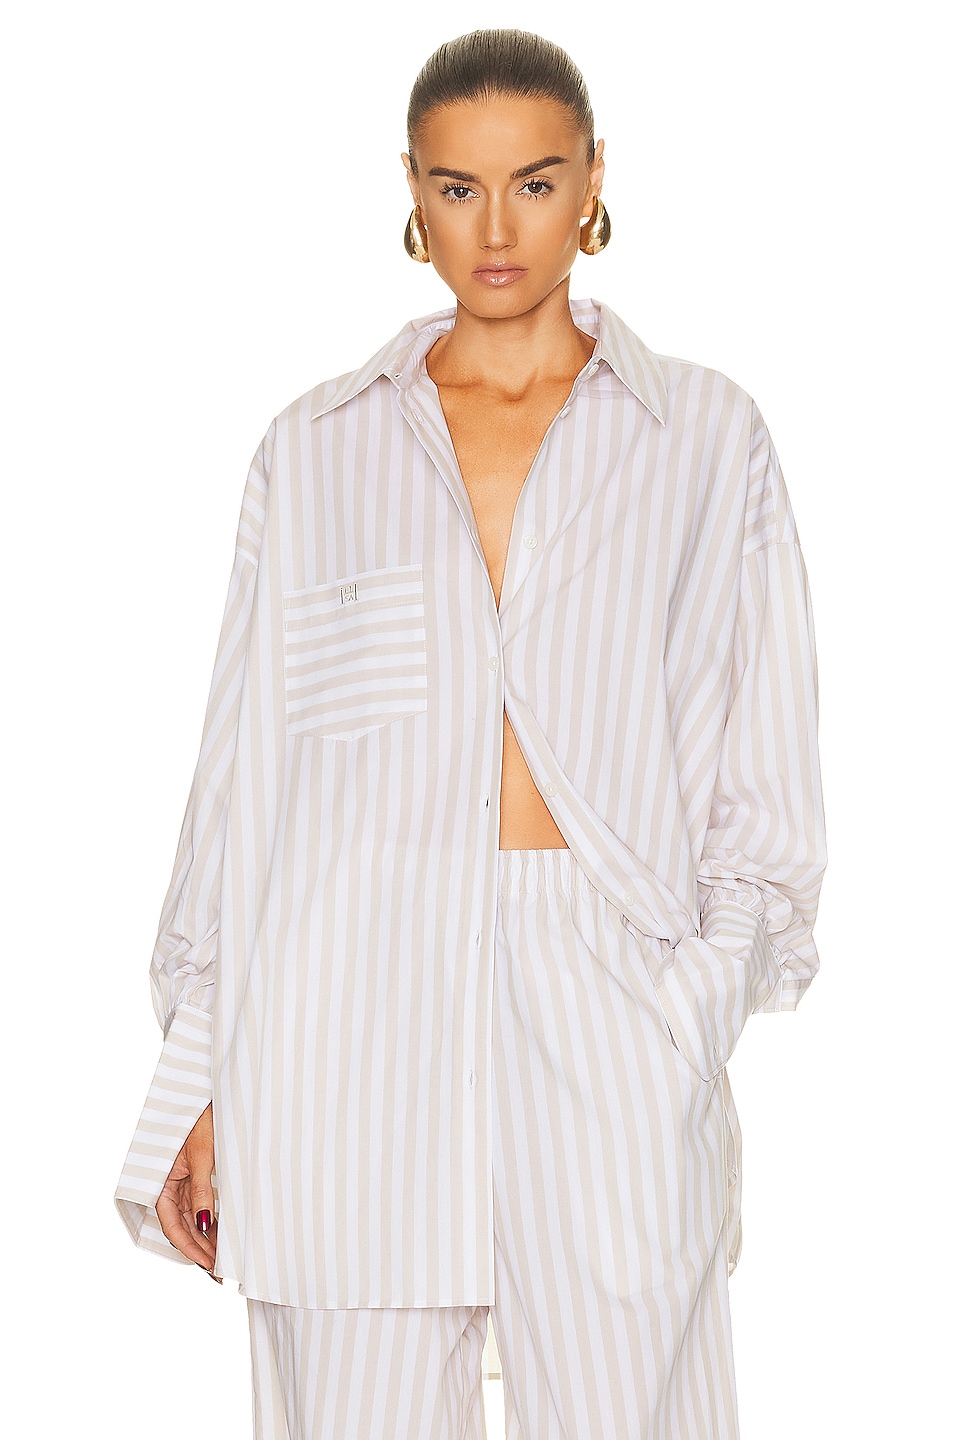 Helsa Cotton Poplin Stripe Oversized Shirt in Beige Stripe | FWRD